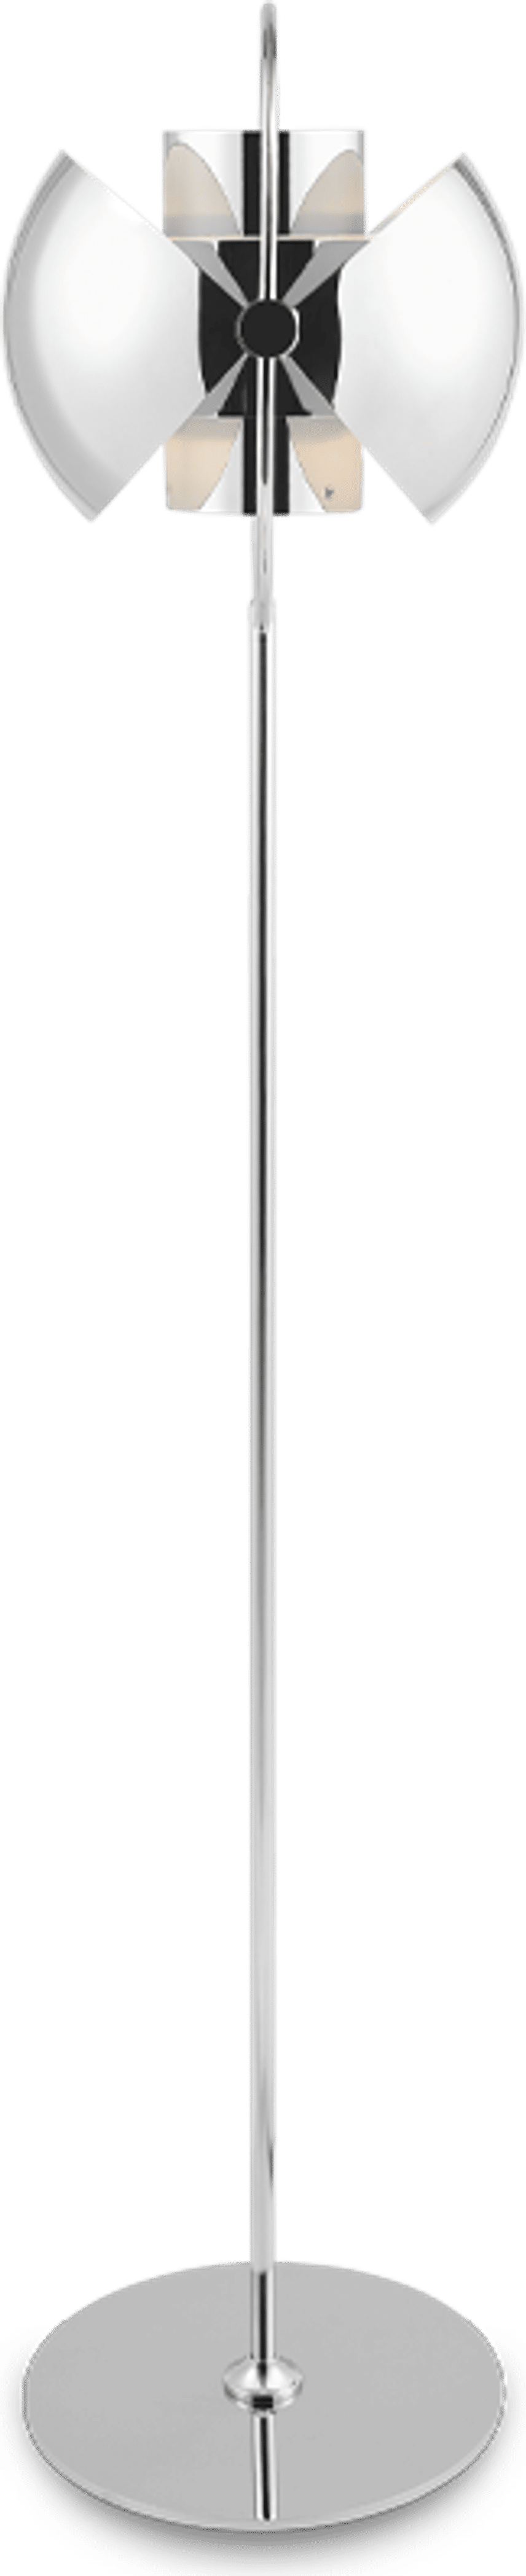 Lámpara de pie estilo Multi-Lite Chrome image.